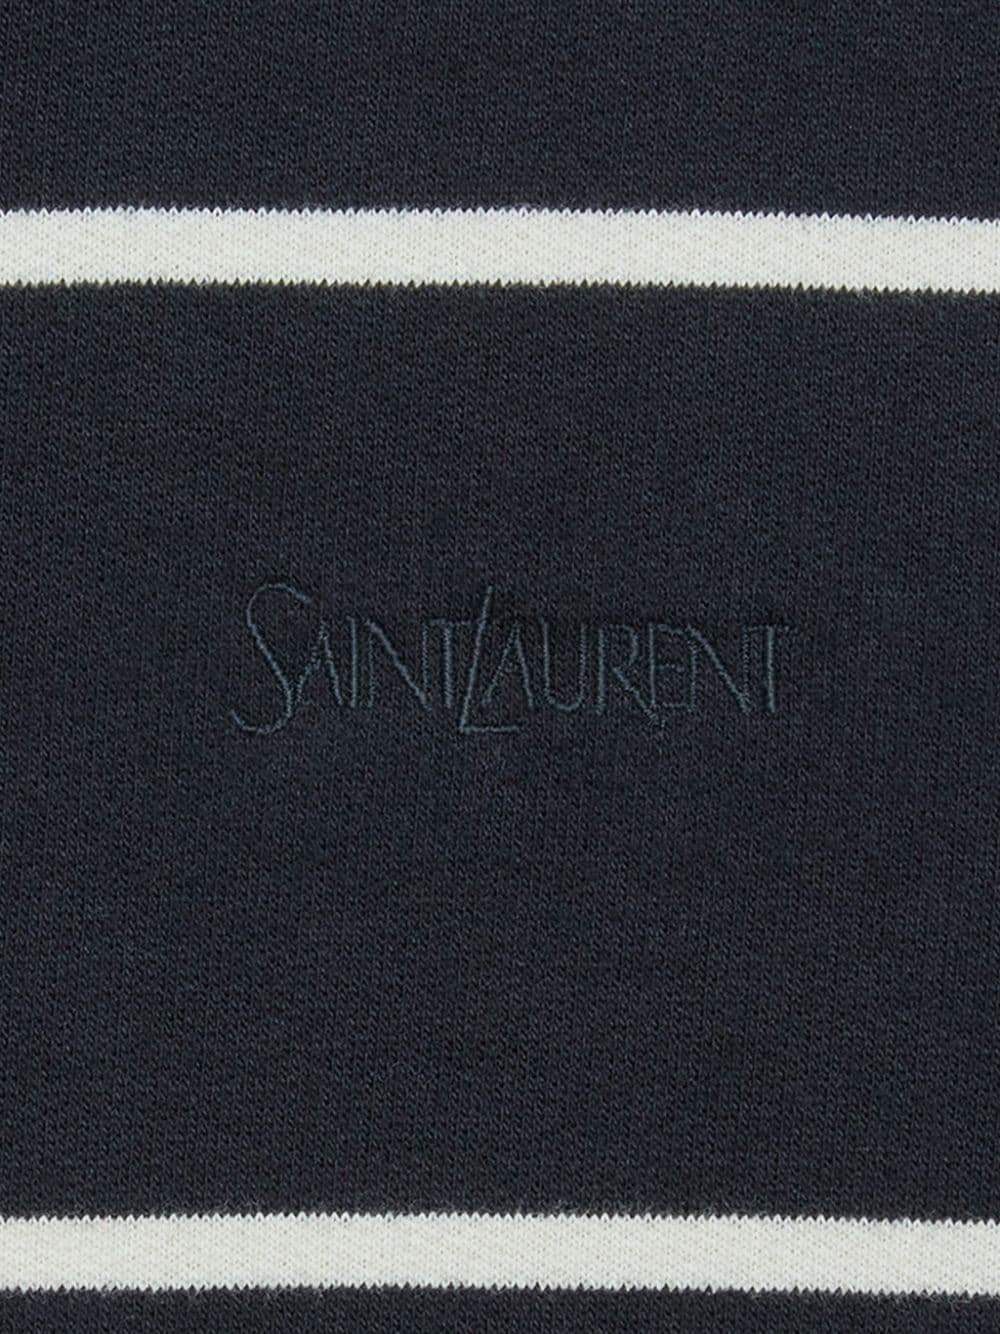 ブラックの刺繍入りコットンフーディー | サンローラン